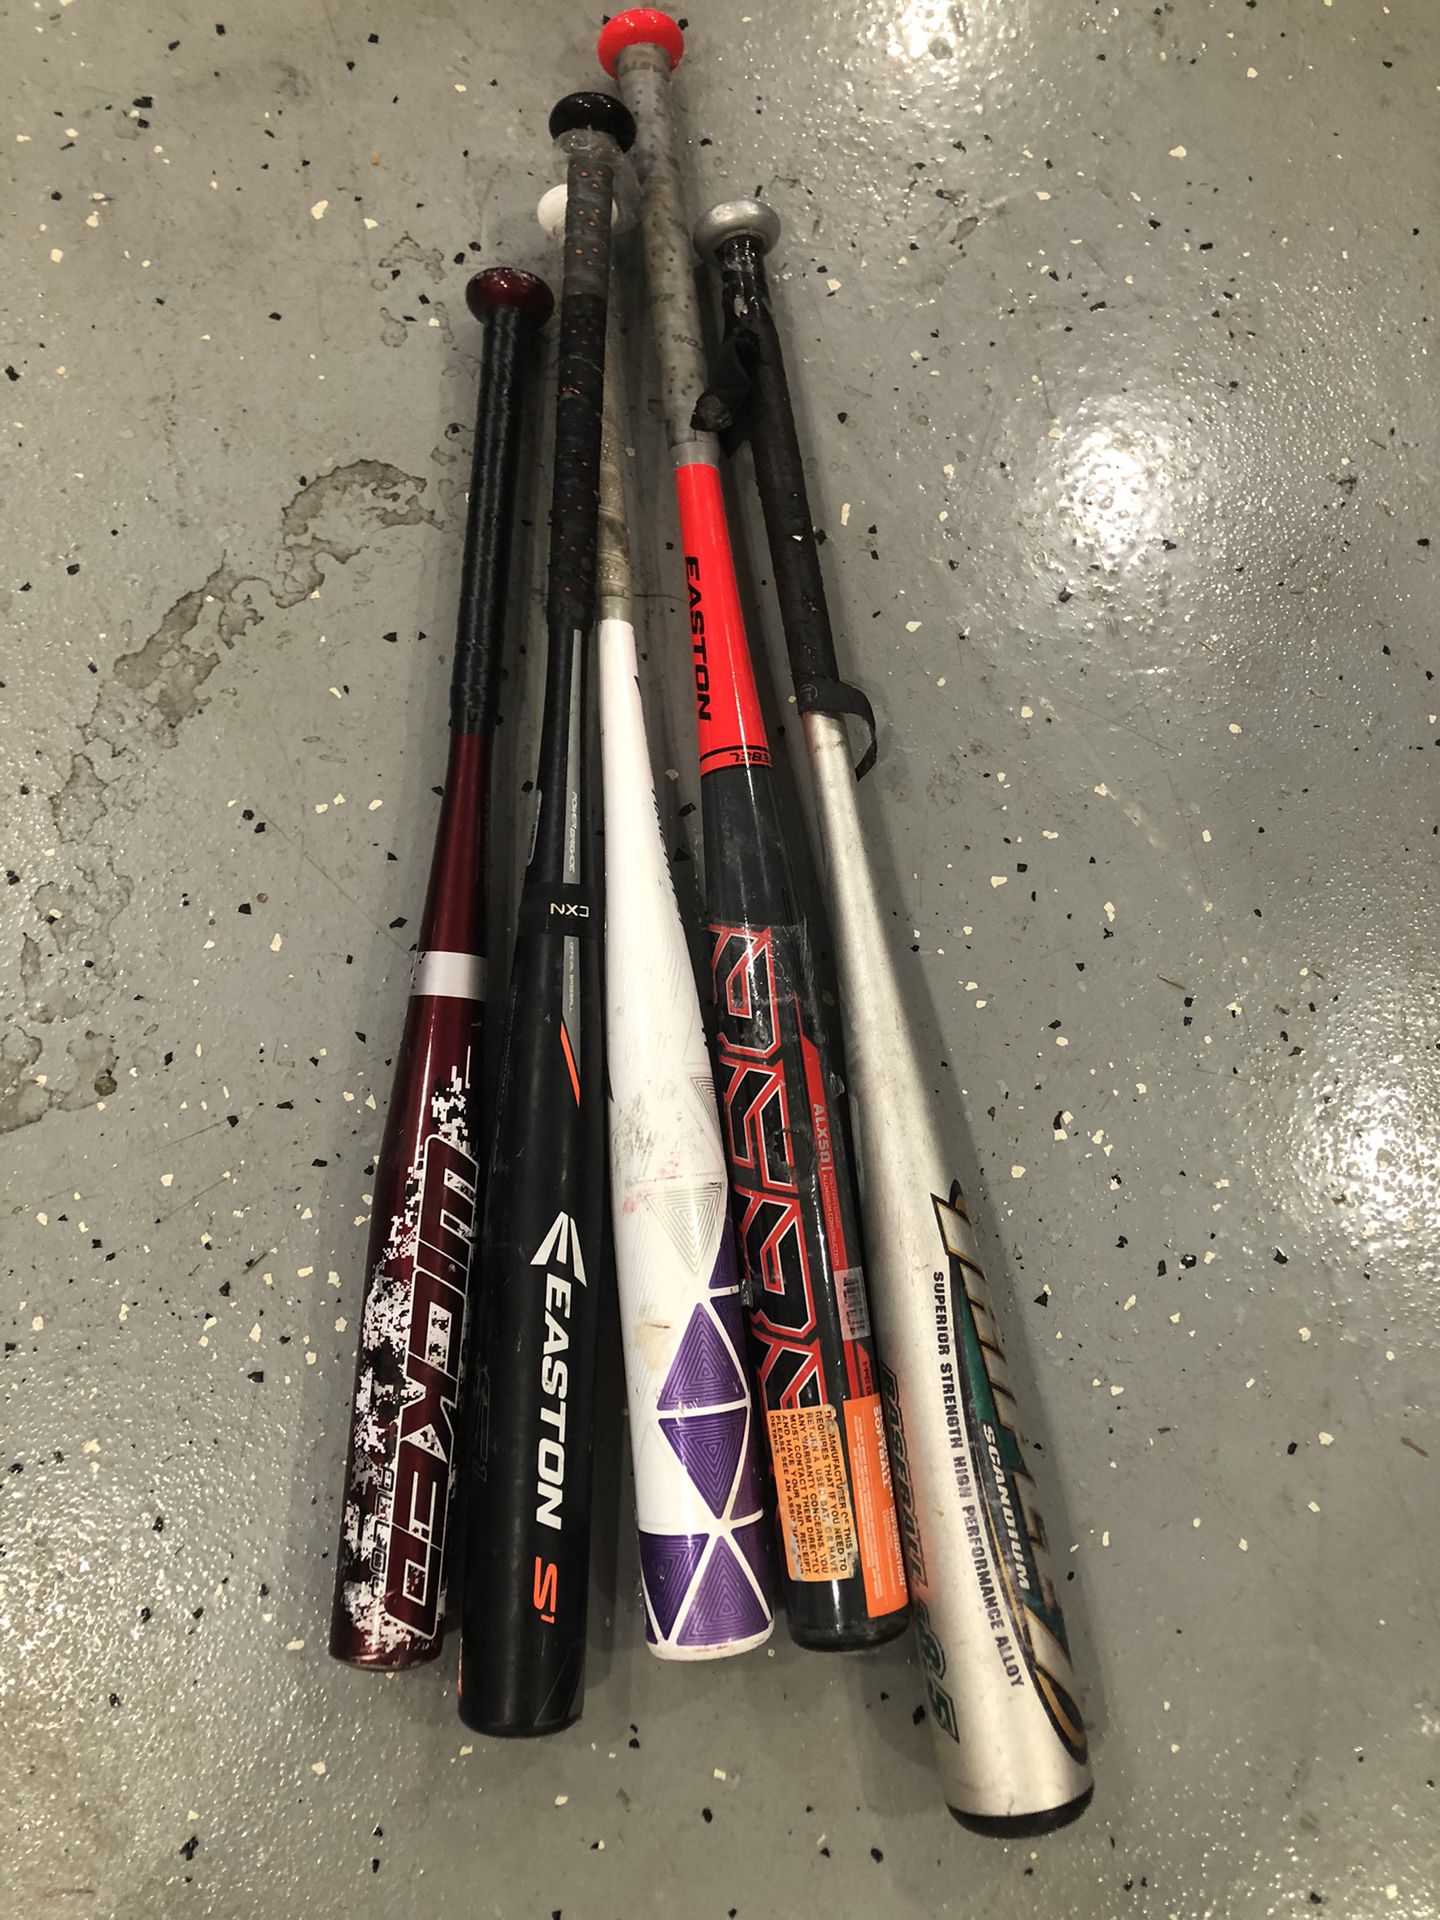 5 baseball bats